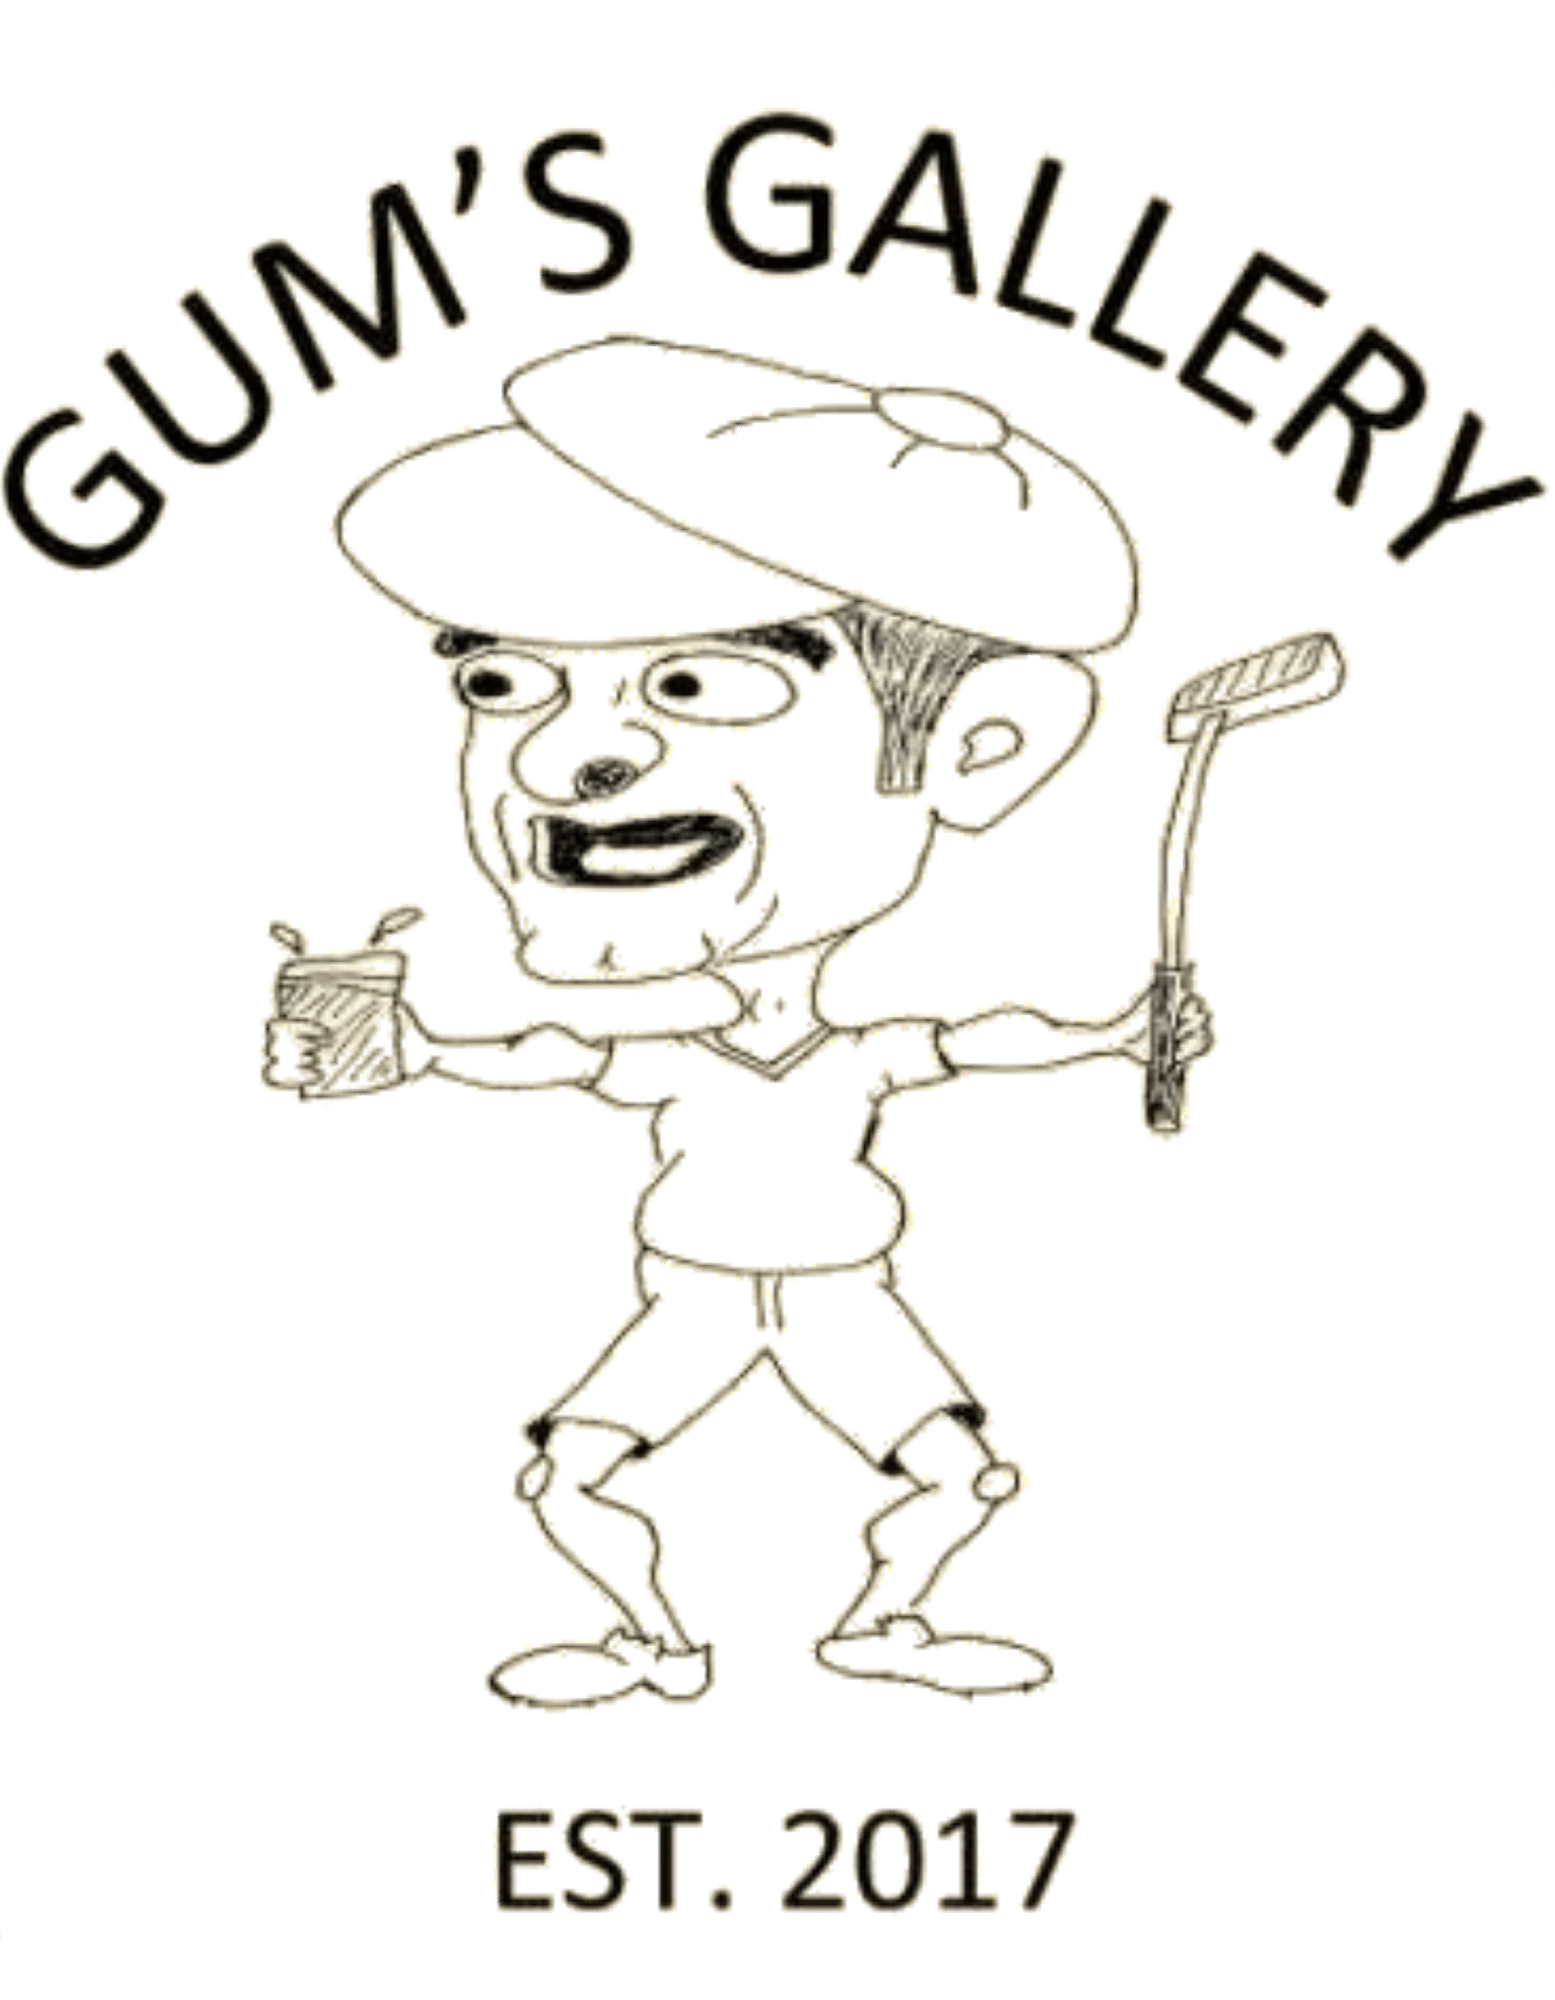 Gum's Gallery